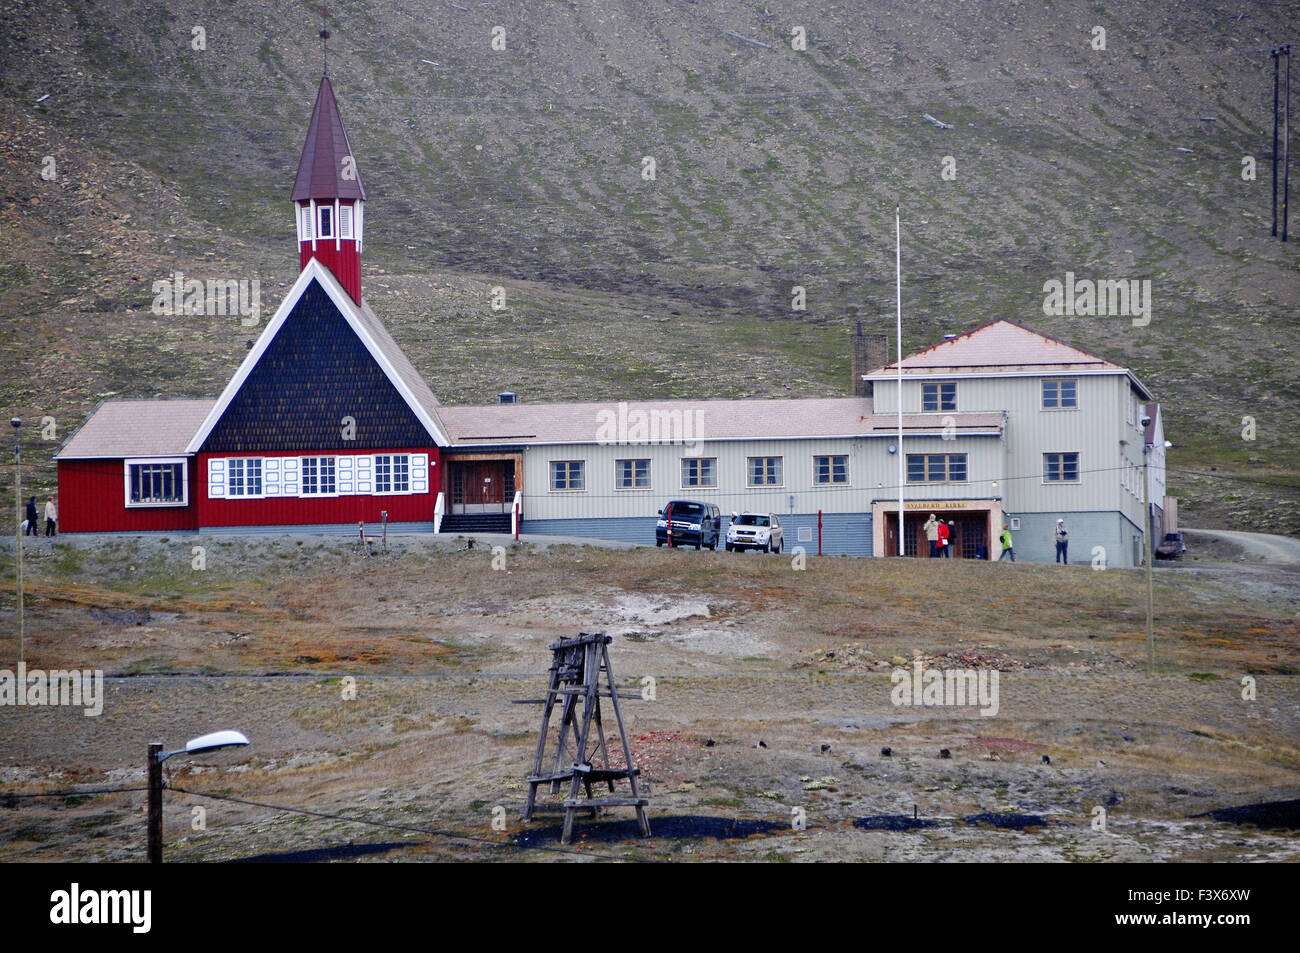 The Church in Longyearbyen (Spitsbergen) Stock Photo